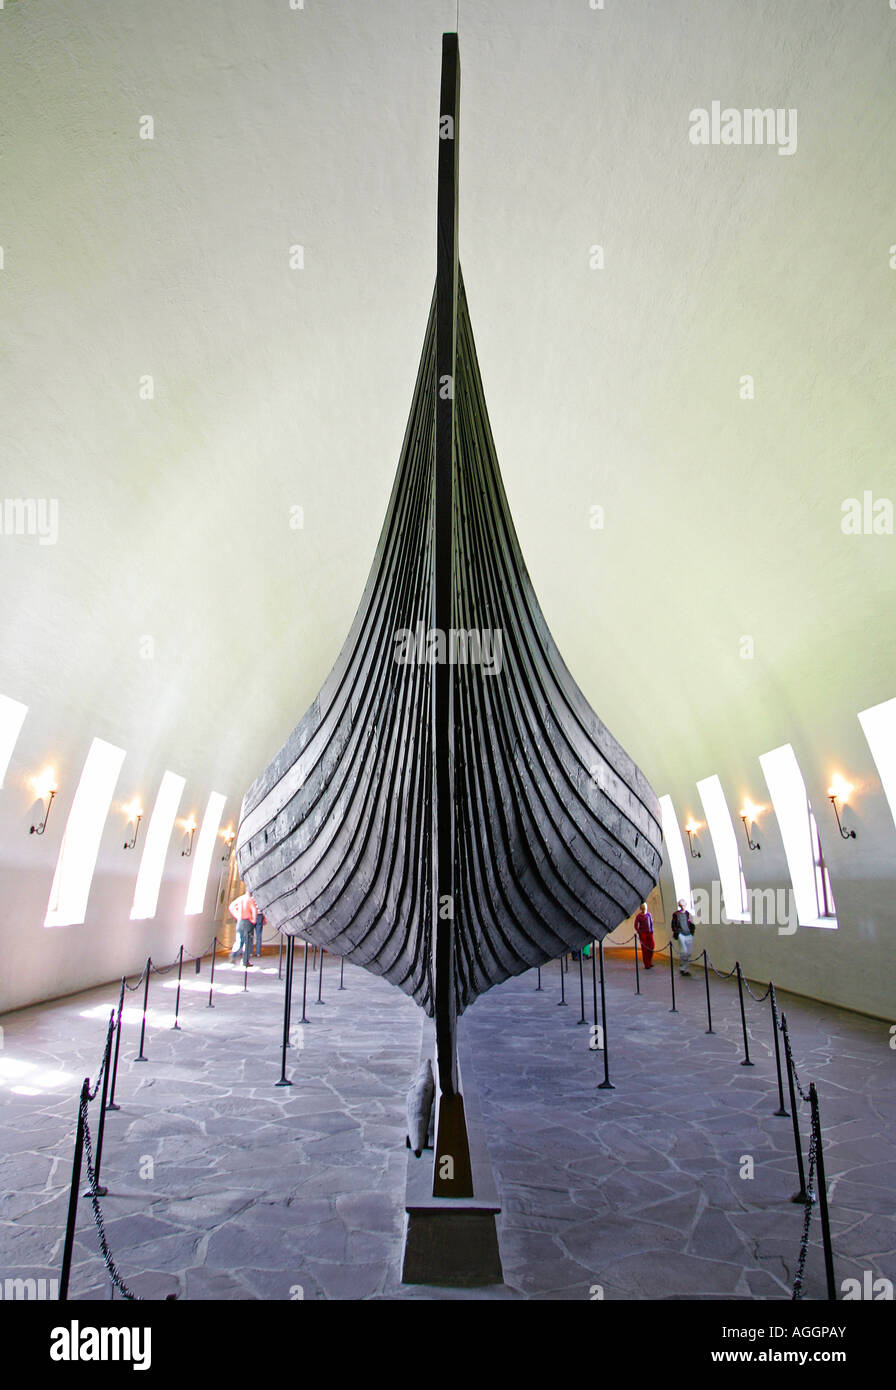 La proue du navire Viking Gokstad excavés dans la sépulture Viking Ships Museum (Vikingskipshuset), Oslo Norvège Banque D'Images